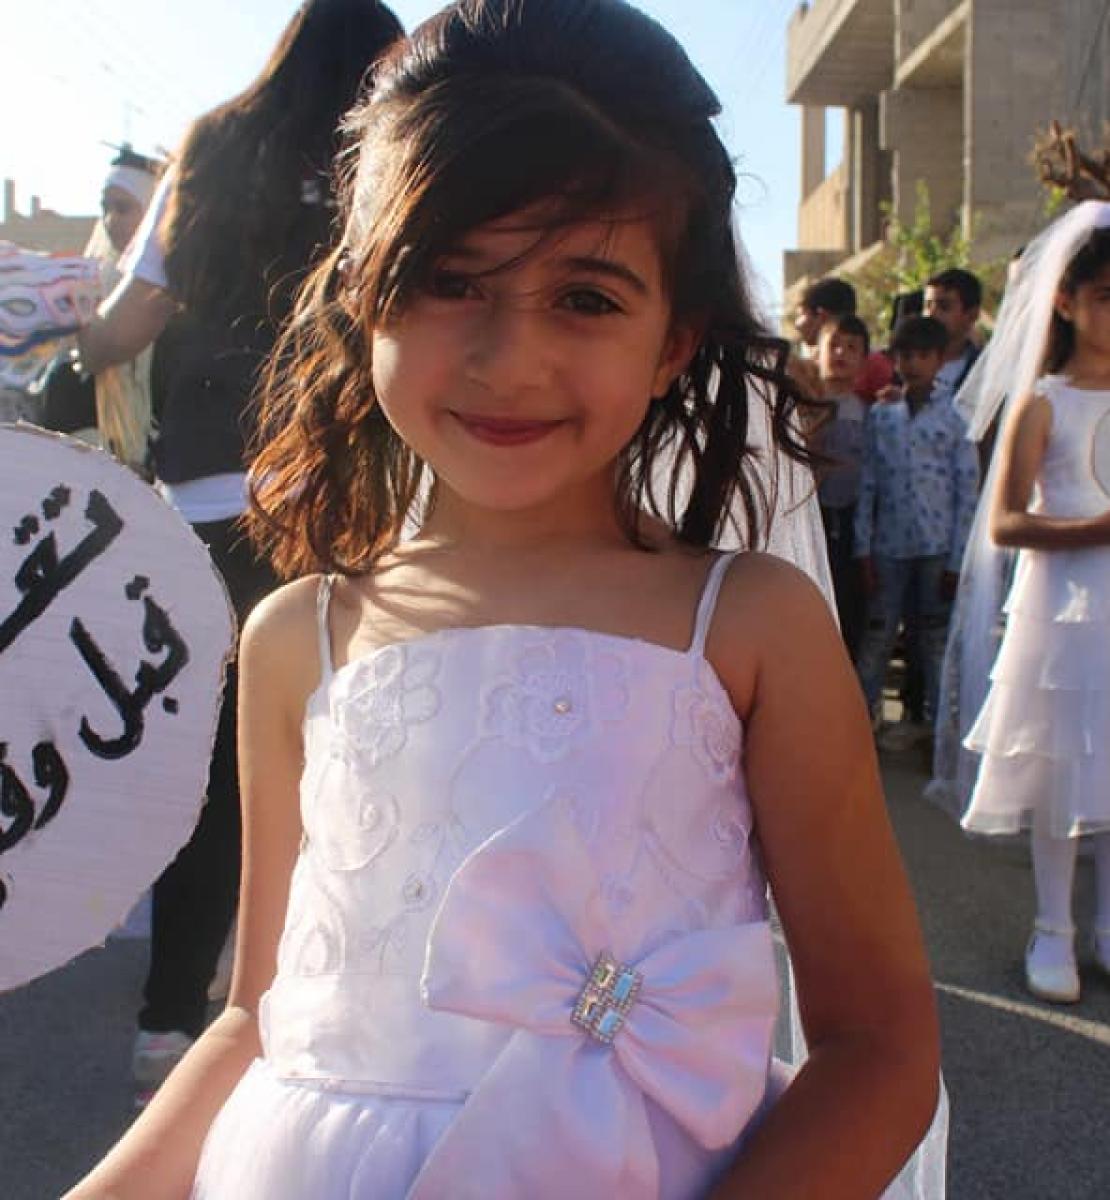 فتاة ترتدي فستان زفاف وتحمل لافتة كتب عليها: لا تقطفها قبل وقتها.